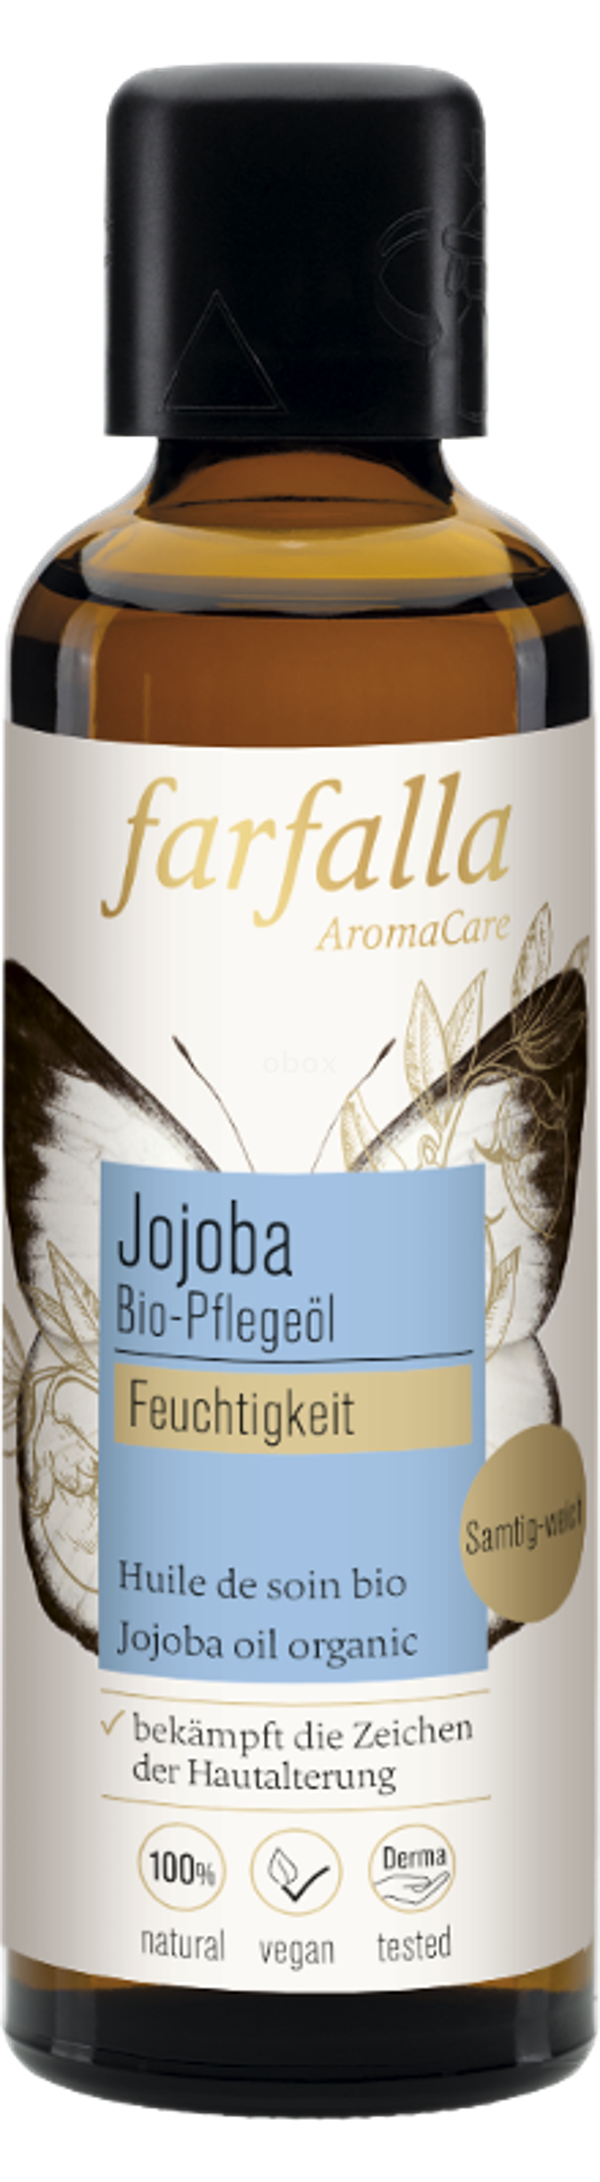 Produktfoto zu Jojoba Pflegeöl